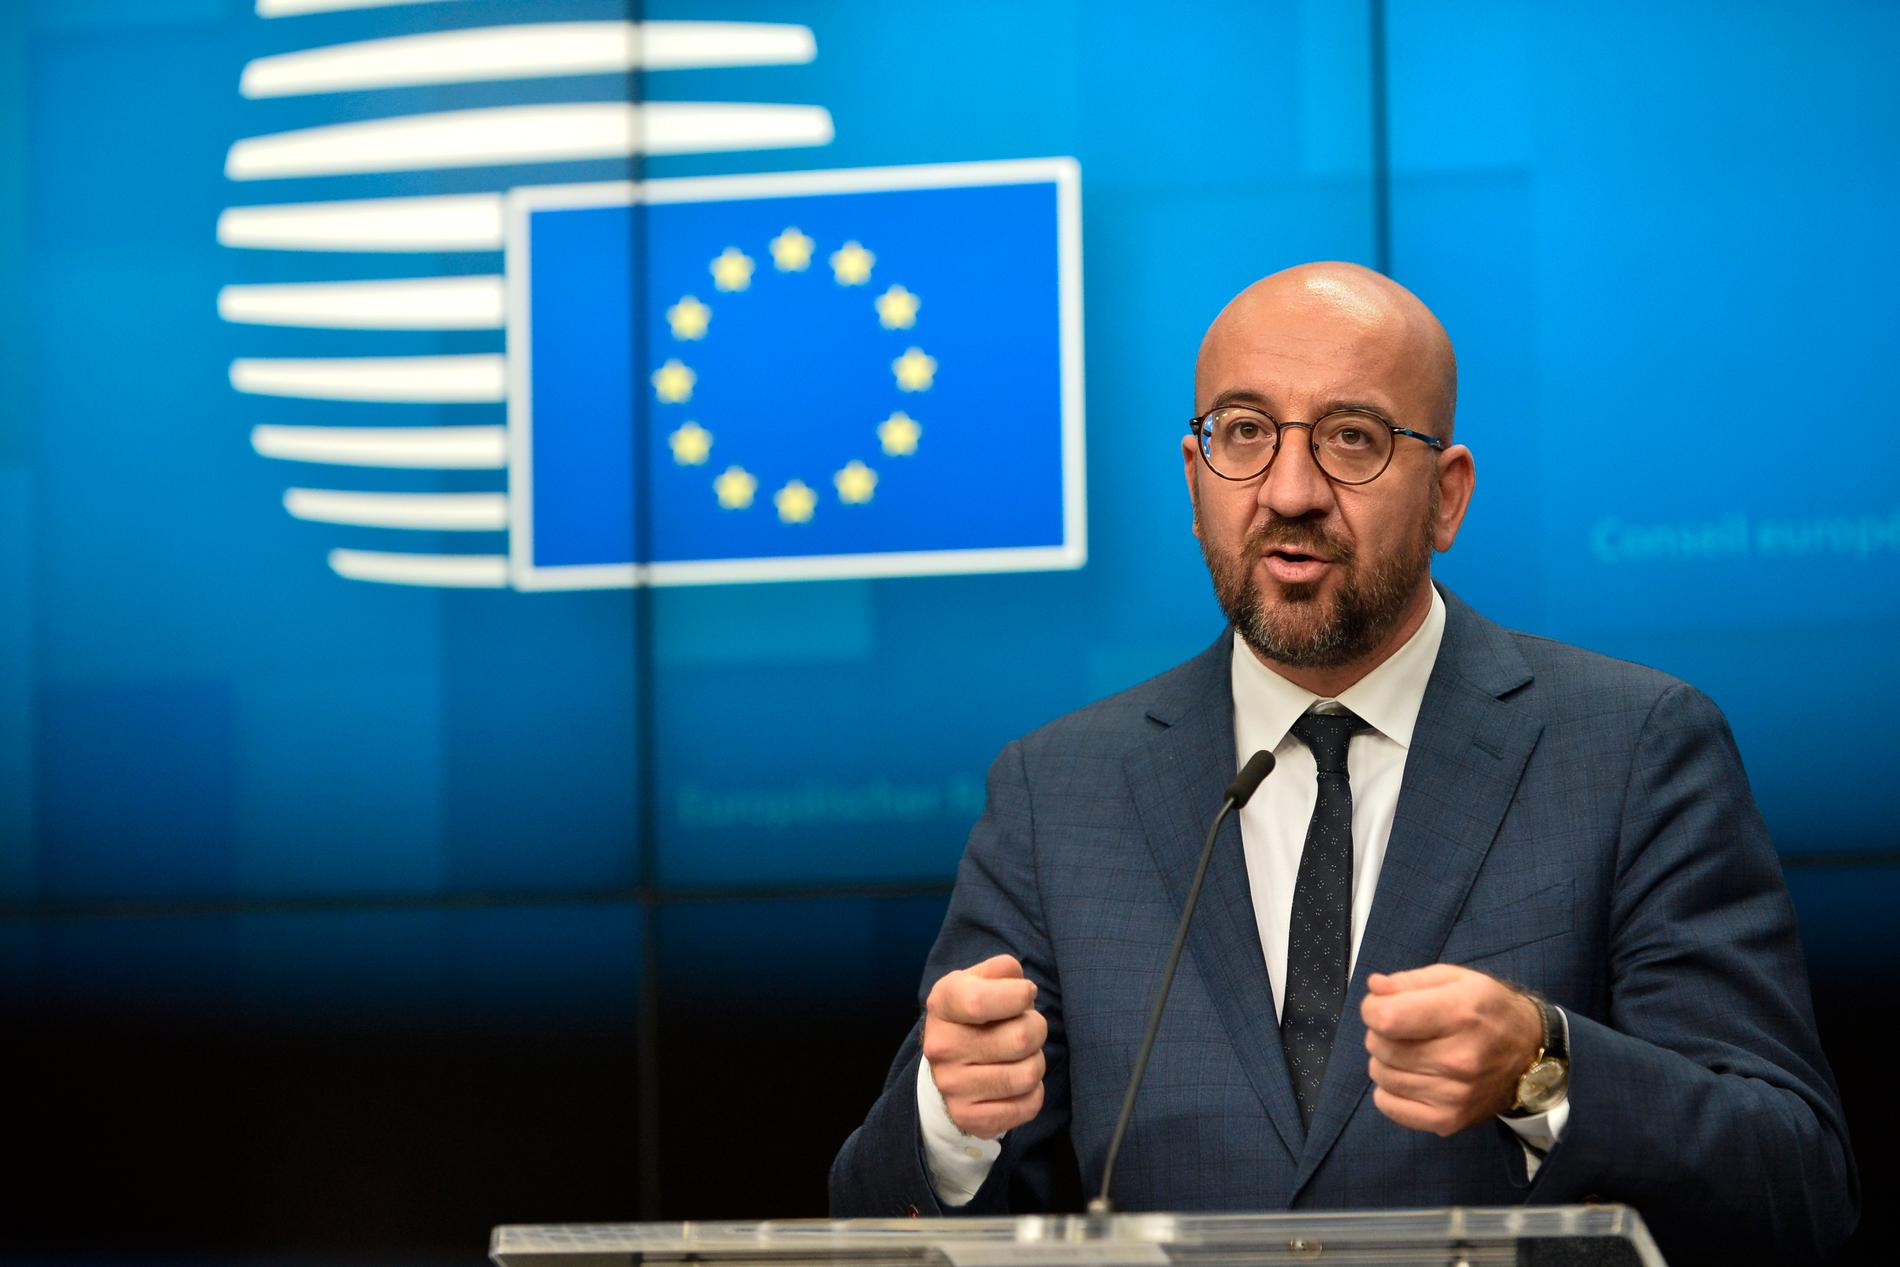 EU:s "verktygslåda" med sanktioner kan tas till om inte Turkiet agerar mer konstruktivt i östra Medelhavet, varnar permanente rådsordföranden Charles Michel i Bryssel.